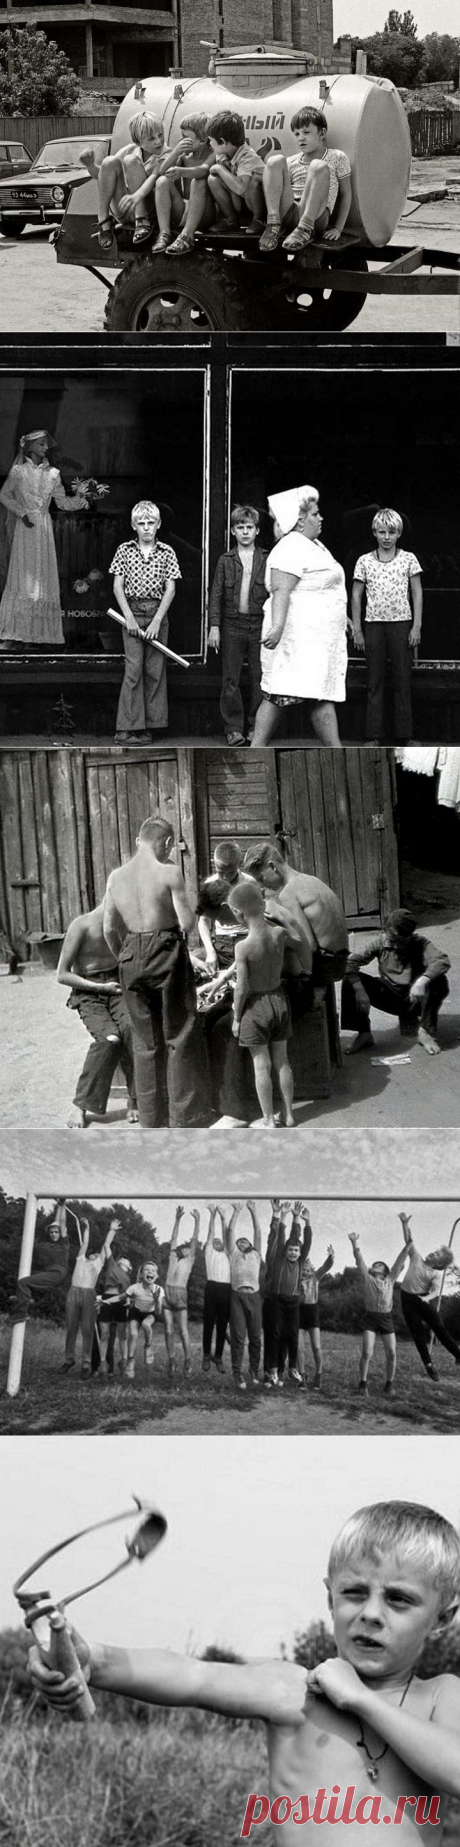 ФотоТелеграф » Дворовые забавы советских детей